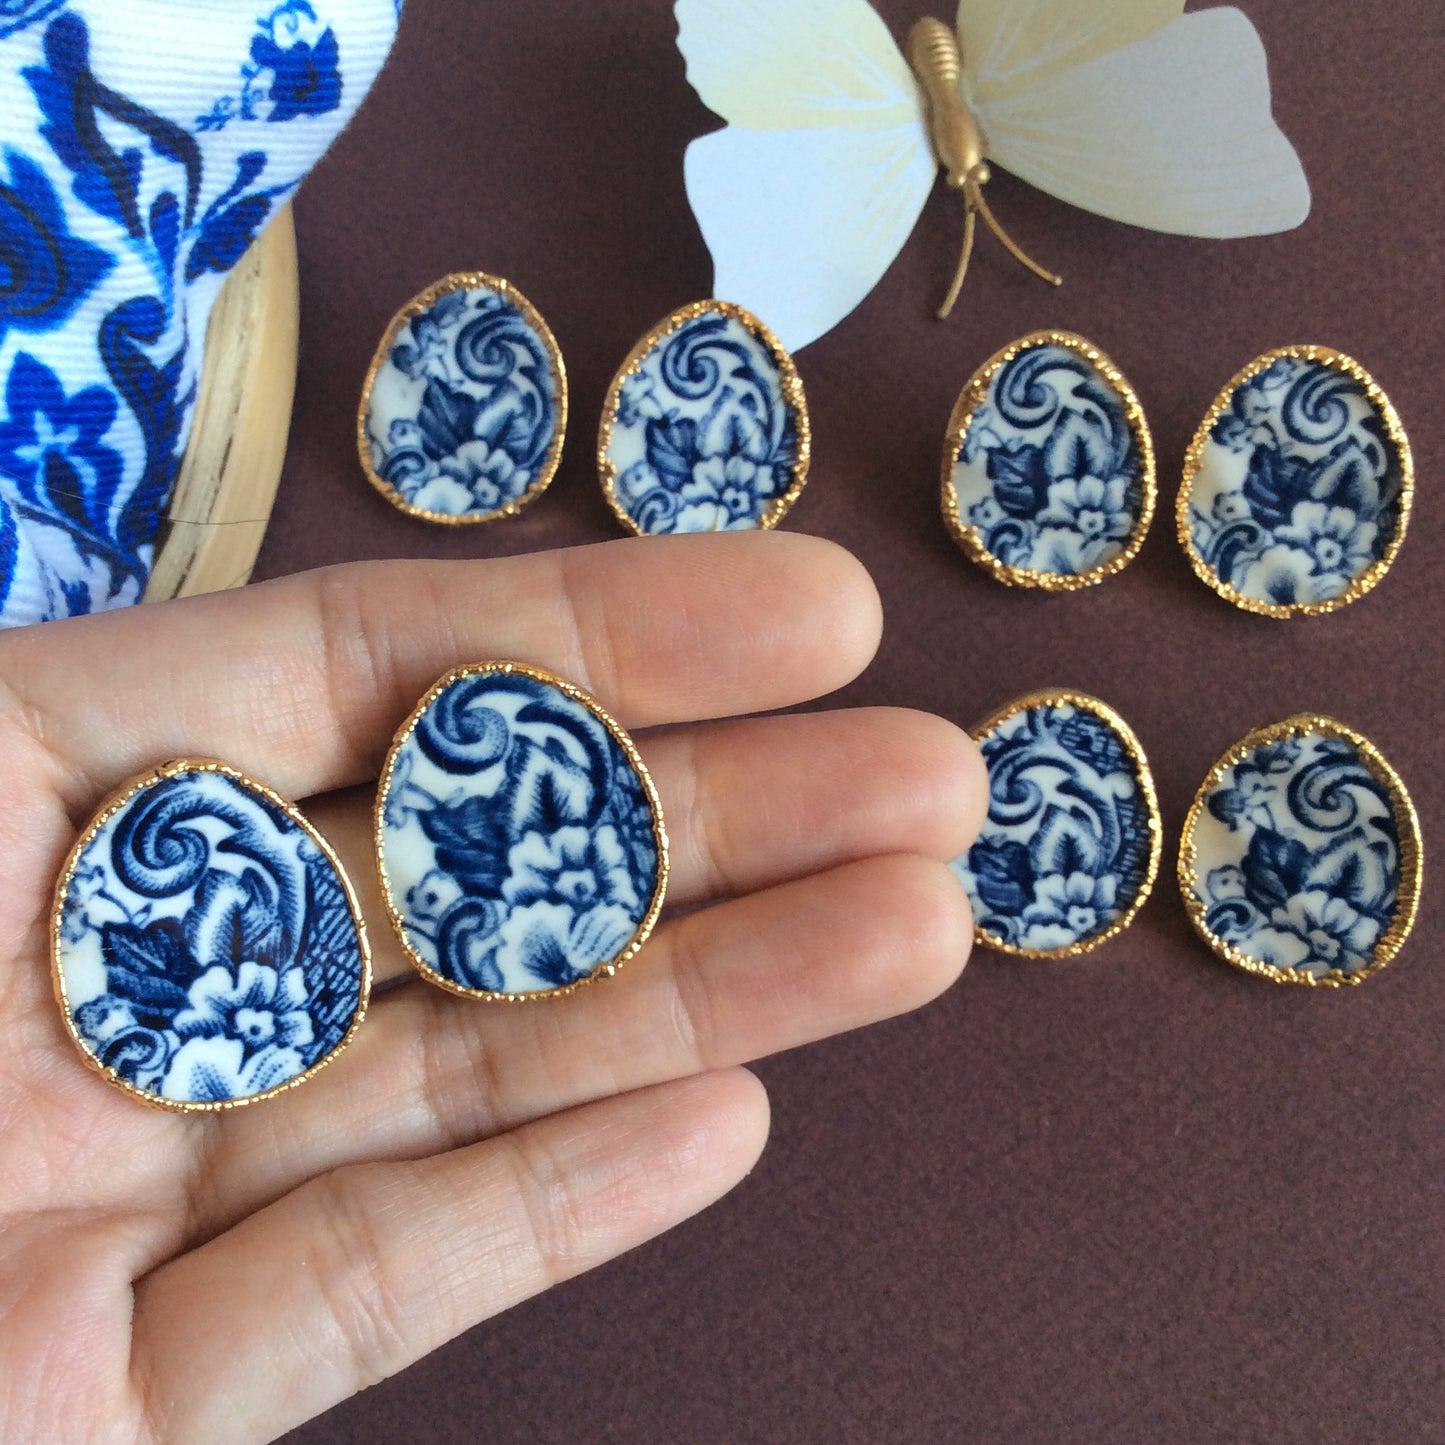 Azulejos porcelain stud earrings